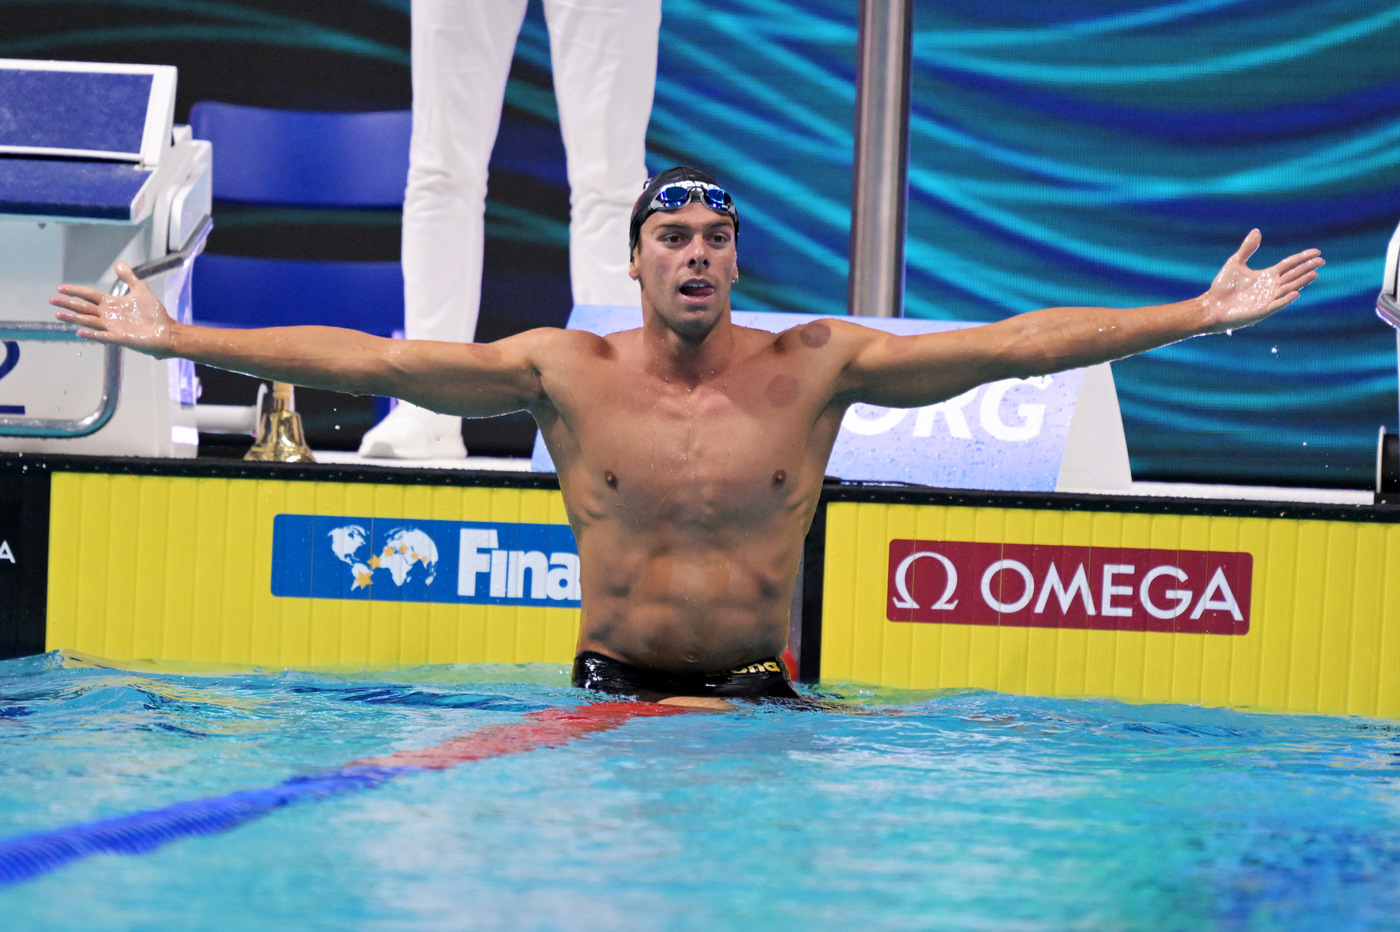 Nuoto, Europei 2022: le iscrizioni gara individuali degli italiani. Le distanze e le specialità di tutti gli azzurri